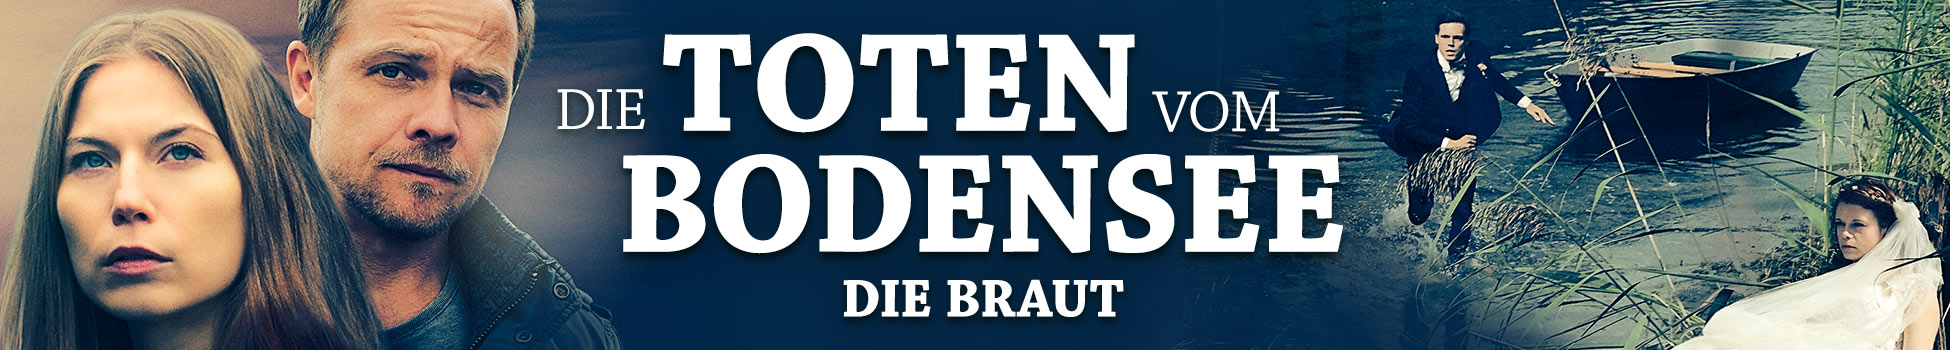 Die Toten vom Bodensee: Die Braut - Artwork - Key Visual - Header